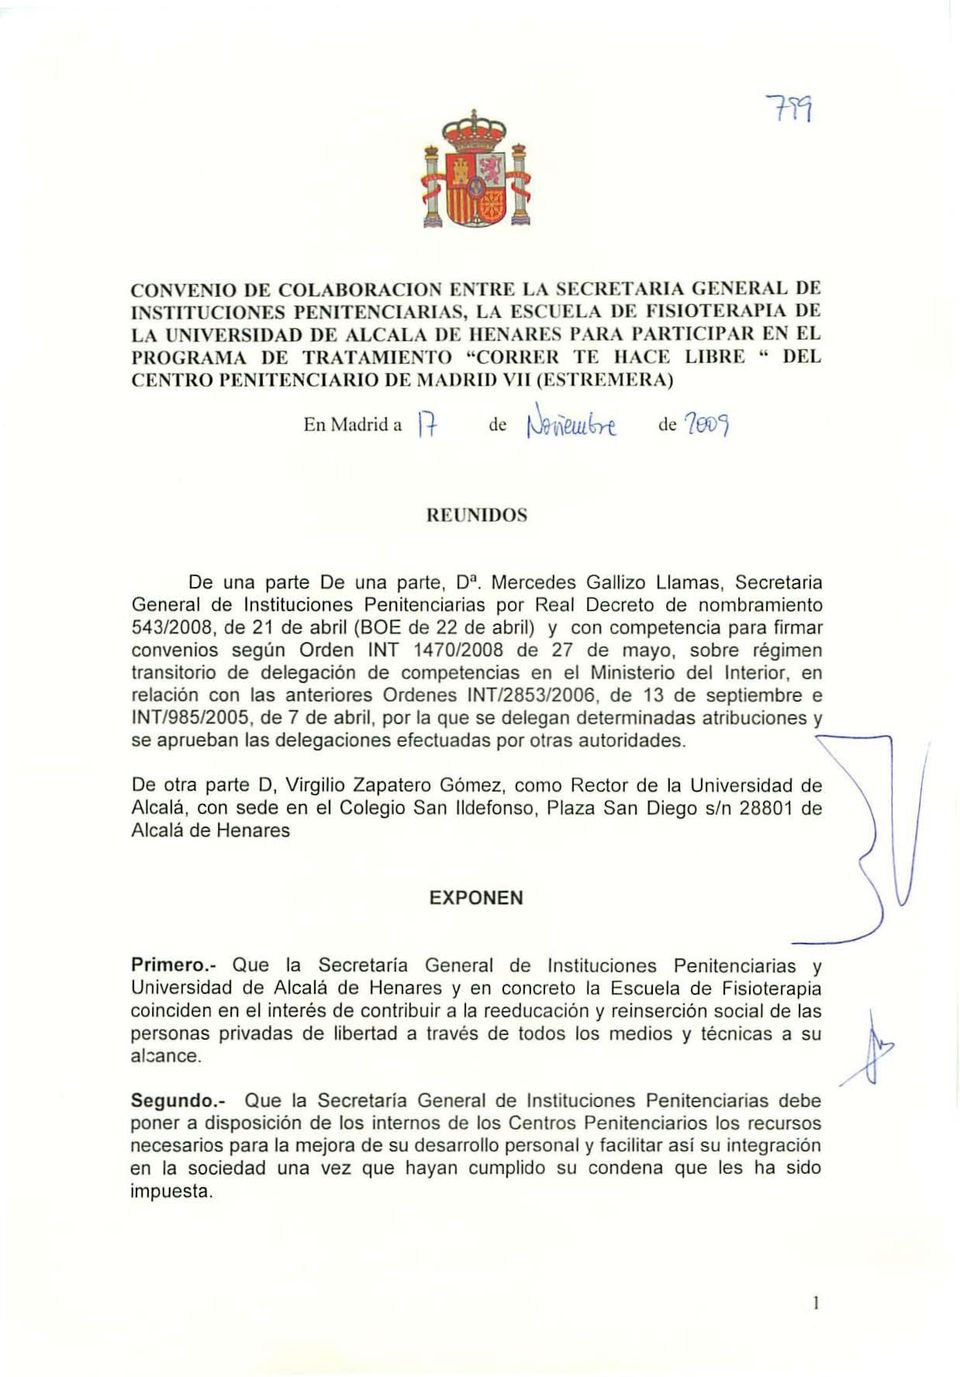 Mercedes Gallizo Llamas, Secretaria General de Instituciones Penitenciarias por Real Decreto de nombramiento 543/2008, de 21 de abril (SOE de 22 de abril) y con competencia para firmar convenios